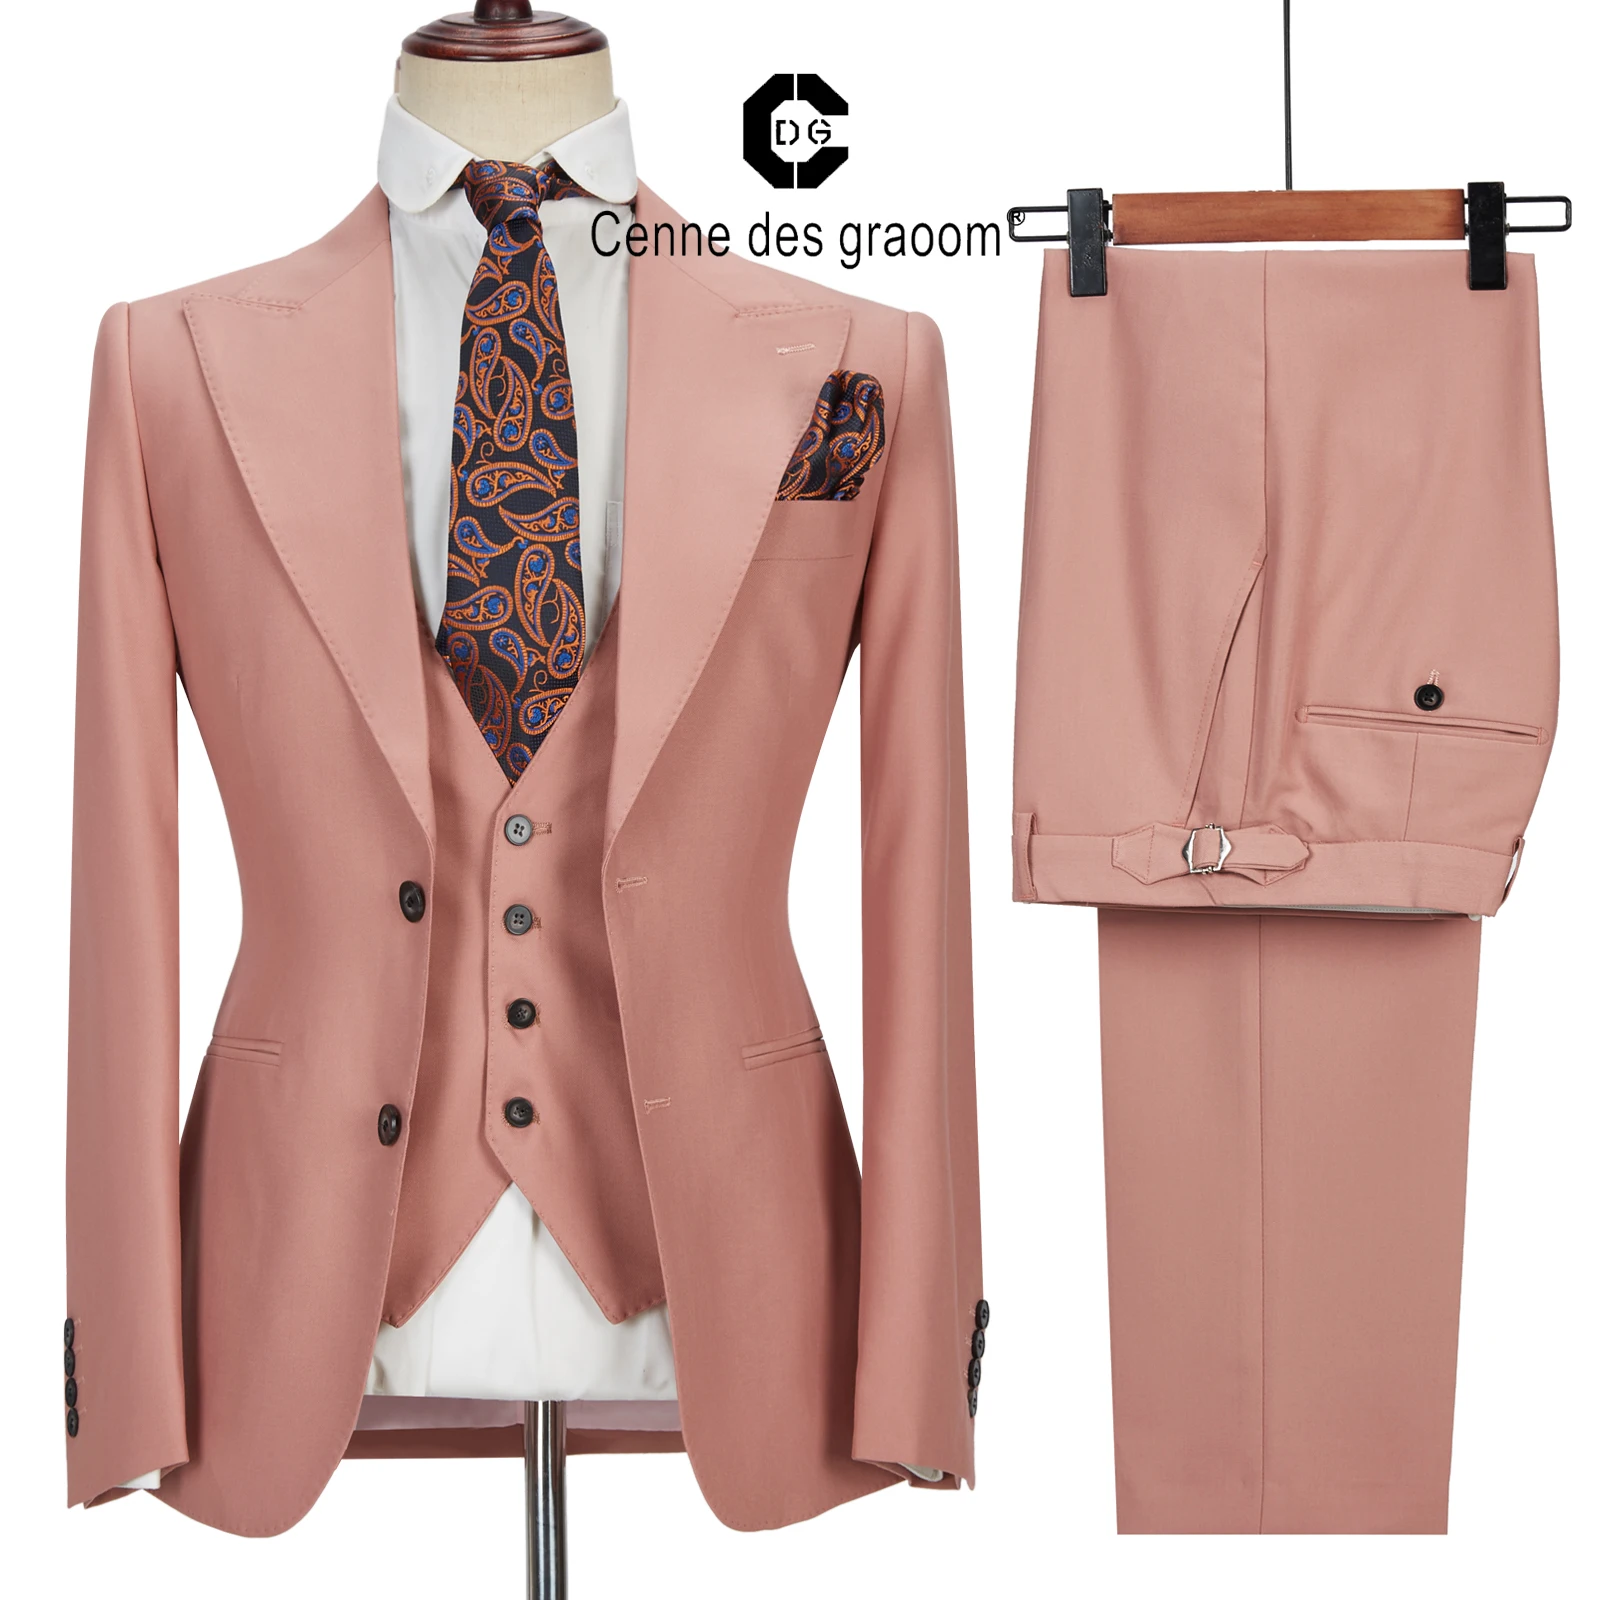 Conjunto de ternos masculinos cenne des graoom, roupas de trabalho, blazer feito sob medida, calça, 3 peças, vestido de casamento, noivo, formal